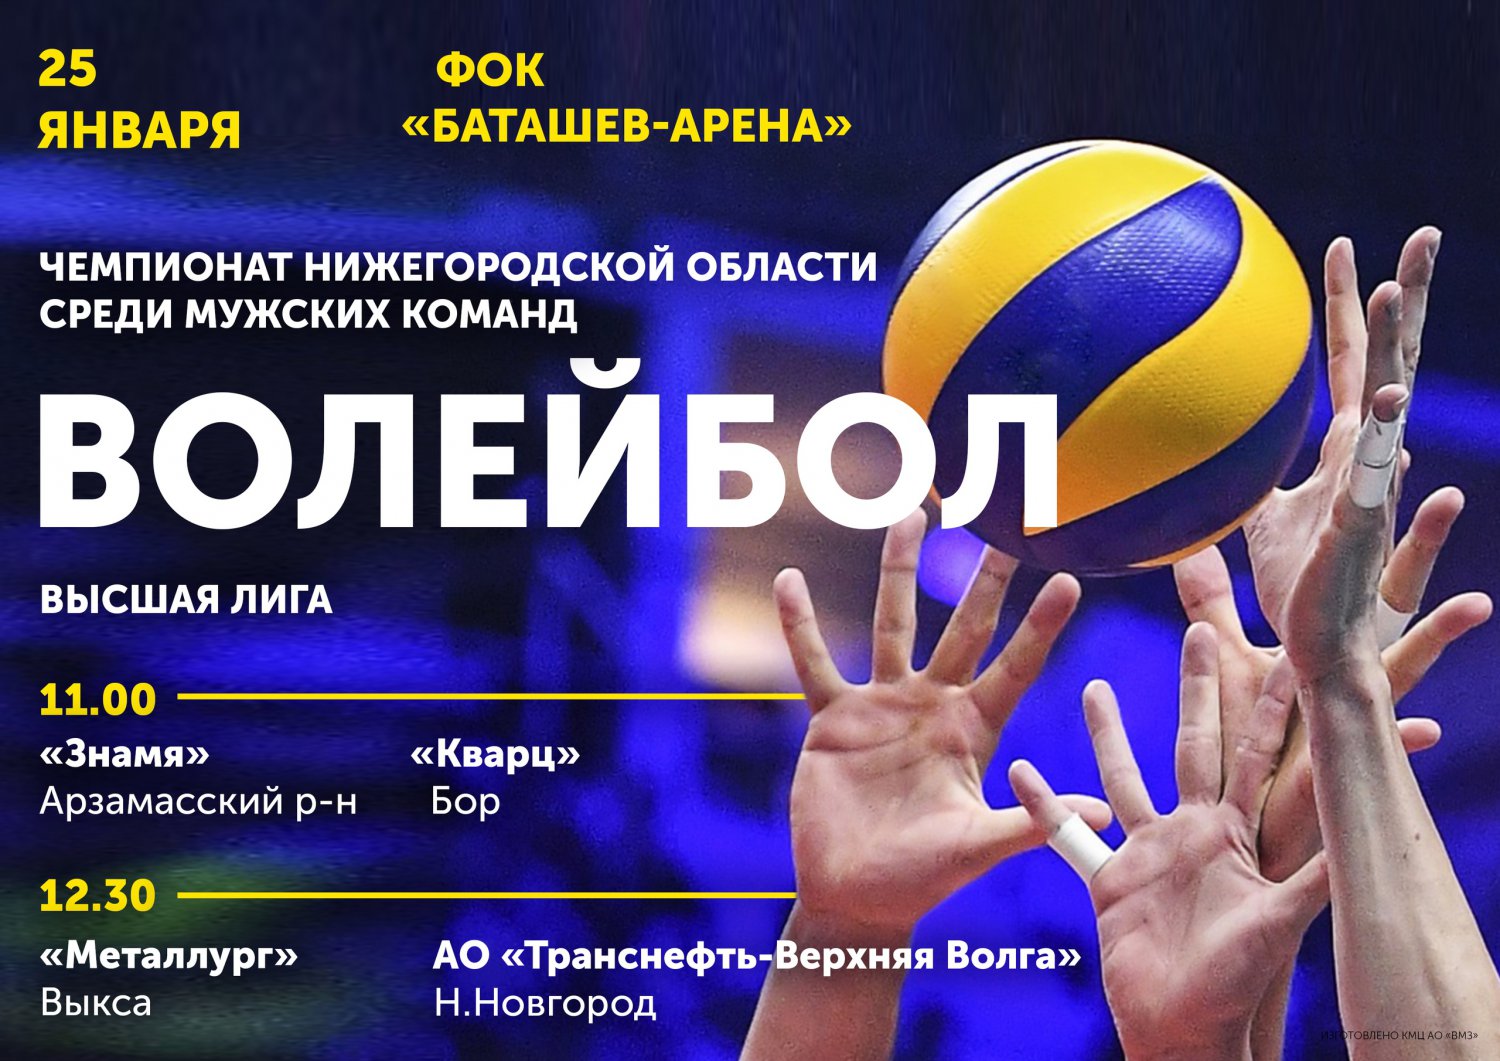 Волейбол: «Металлург» Выкса — «Транснефть-Верхняя Волга» Нижний Новгород